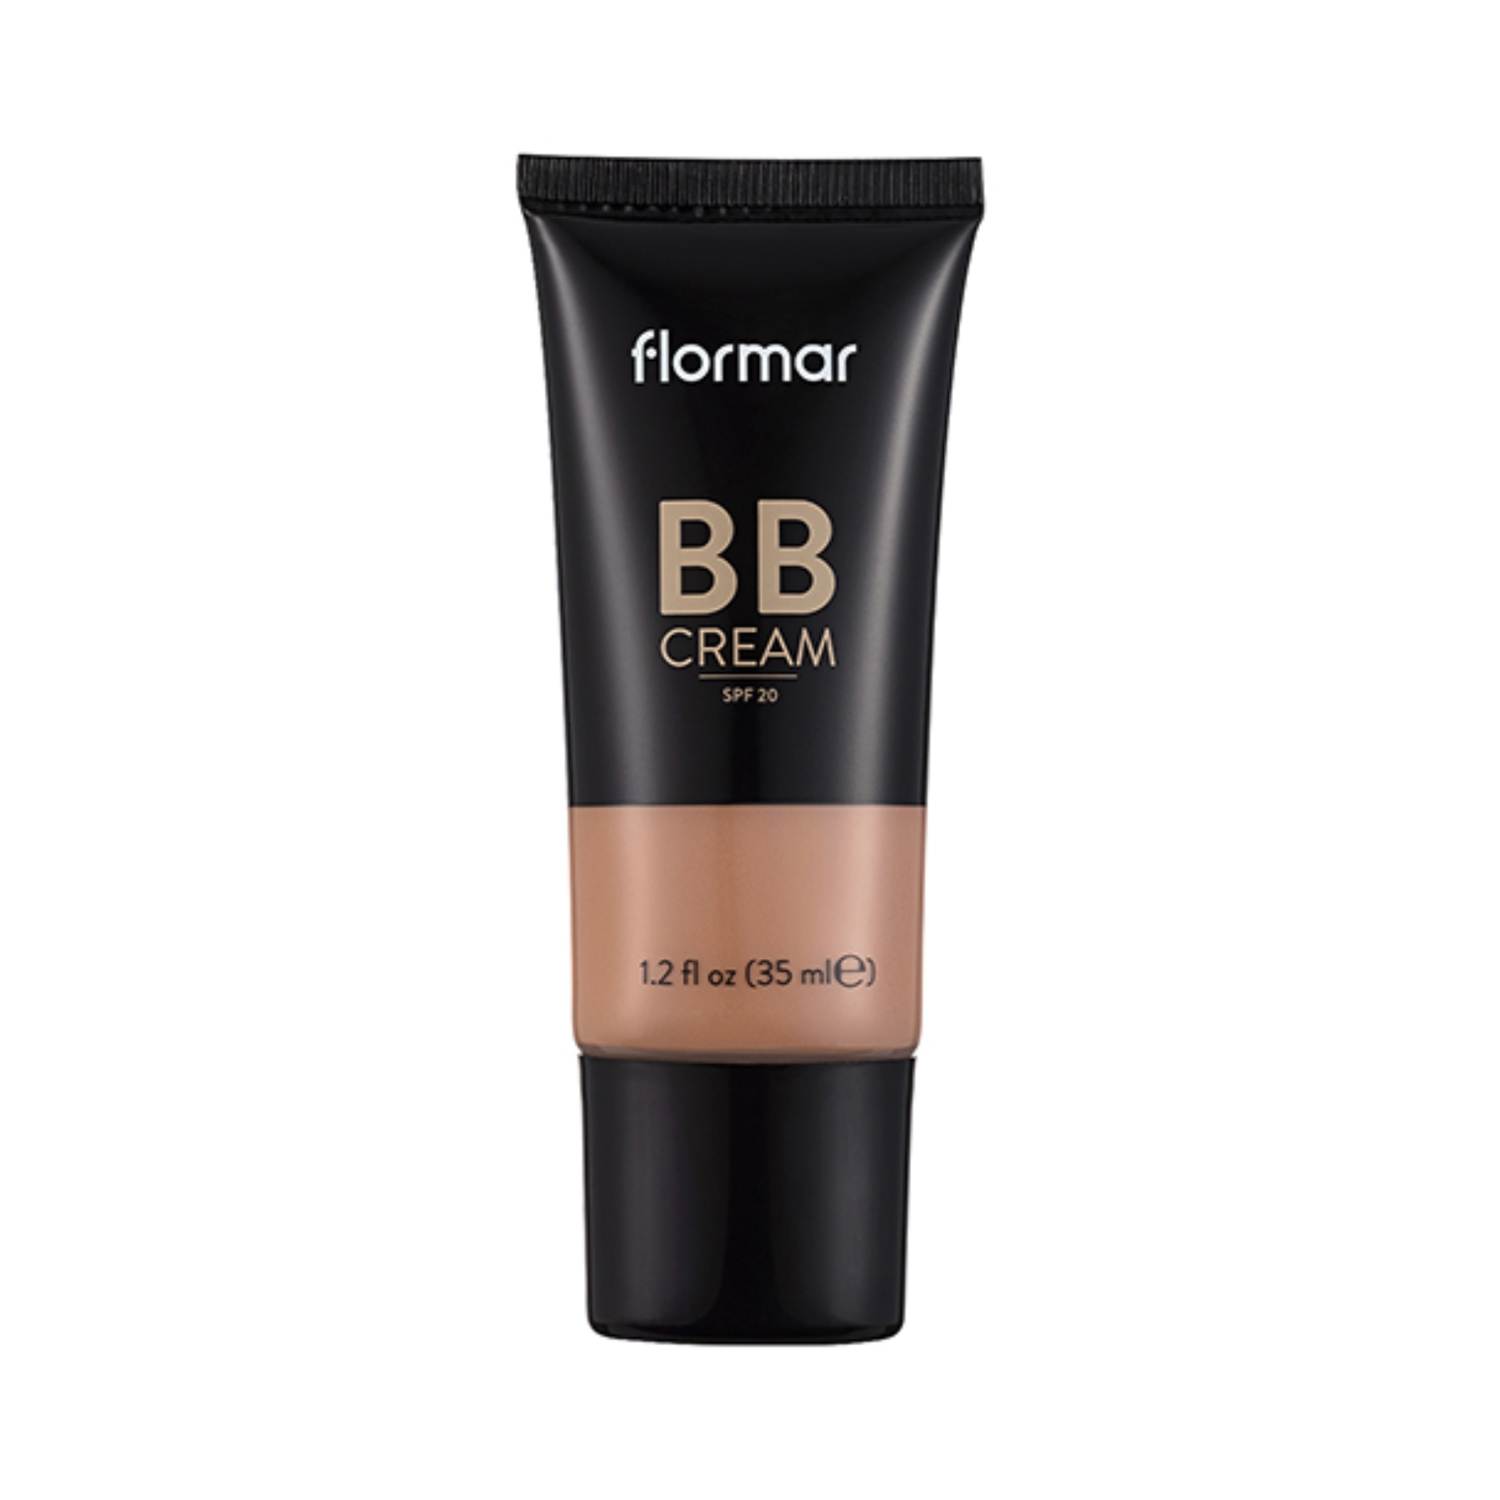 Buy Flormar BB Cream - BB04 Light/Medium (35ml) Online at Best Price in  India